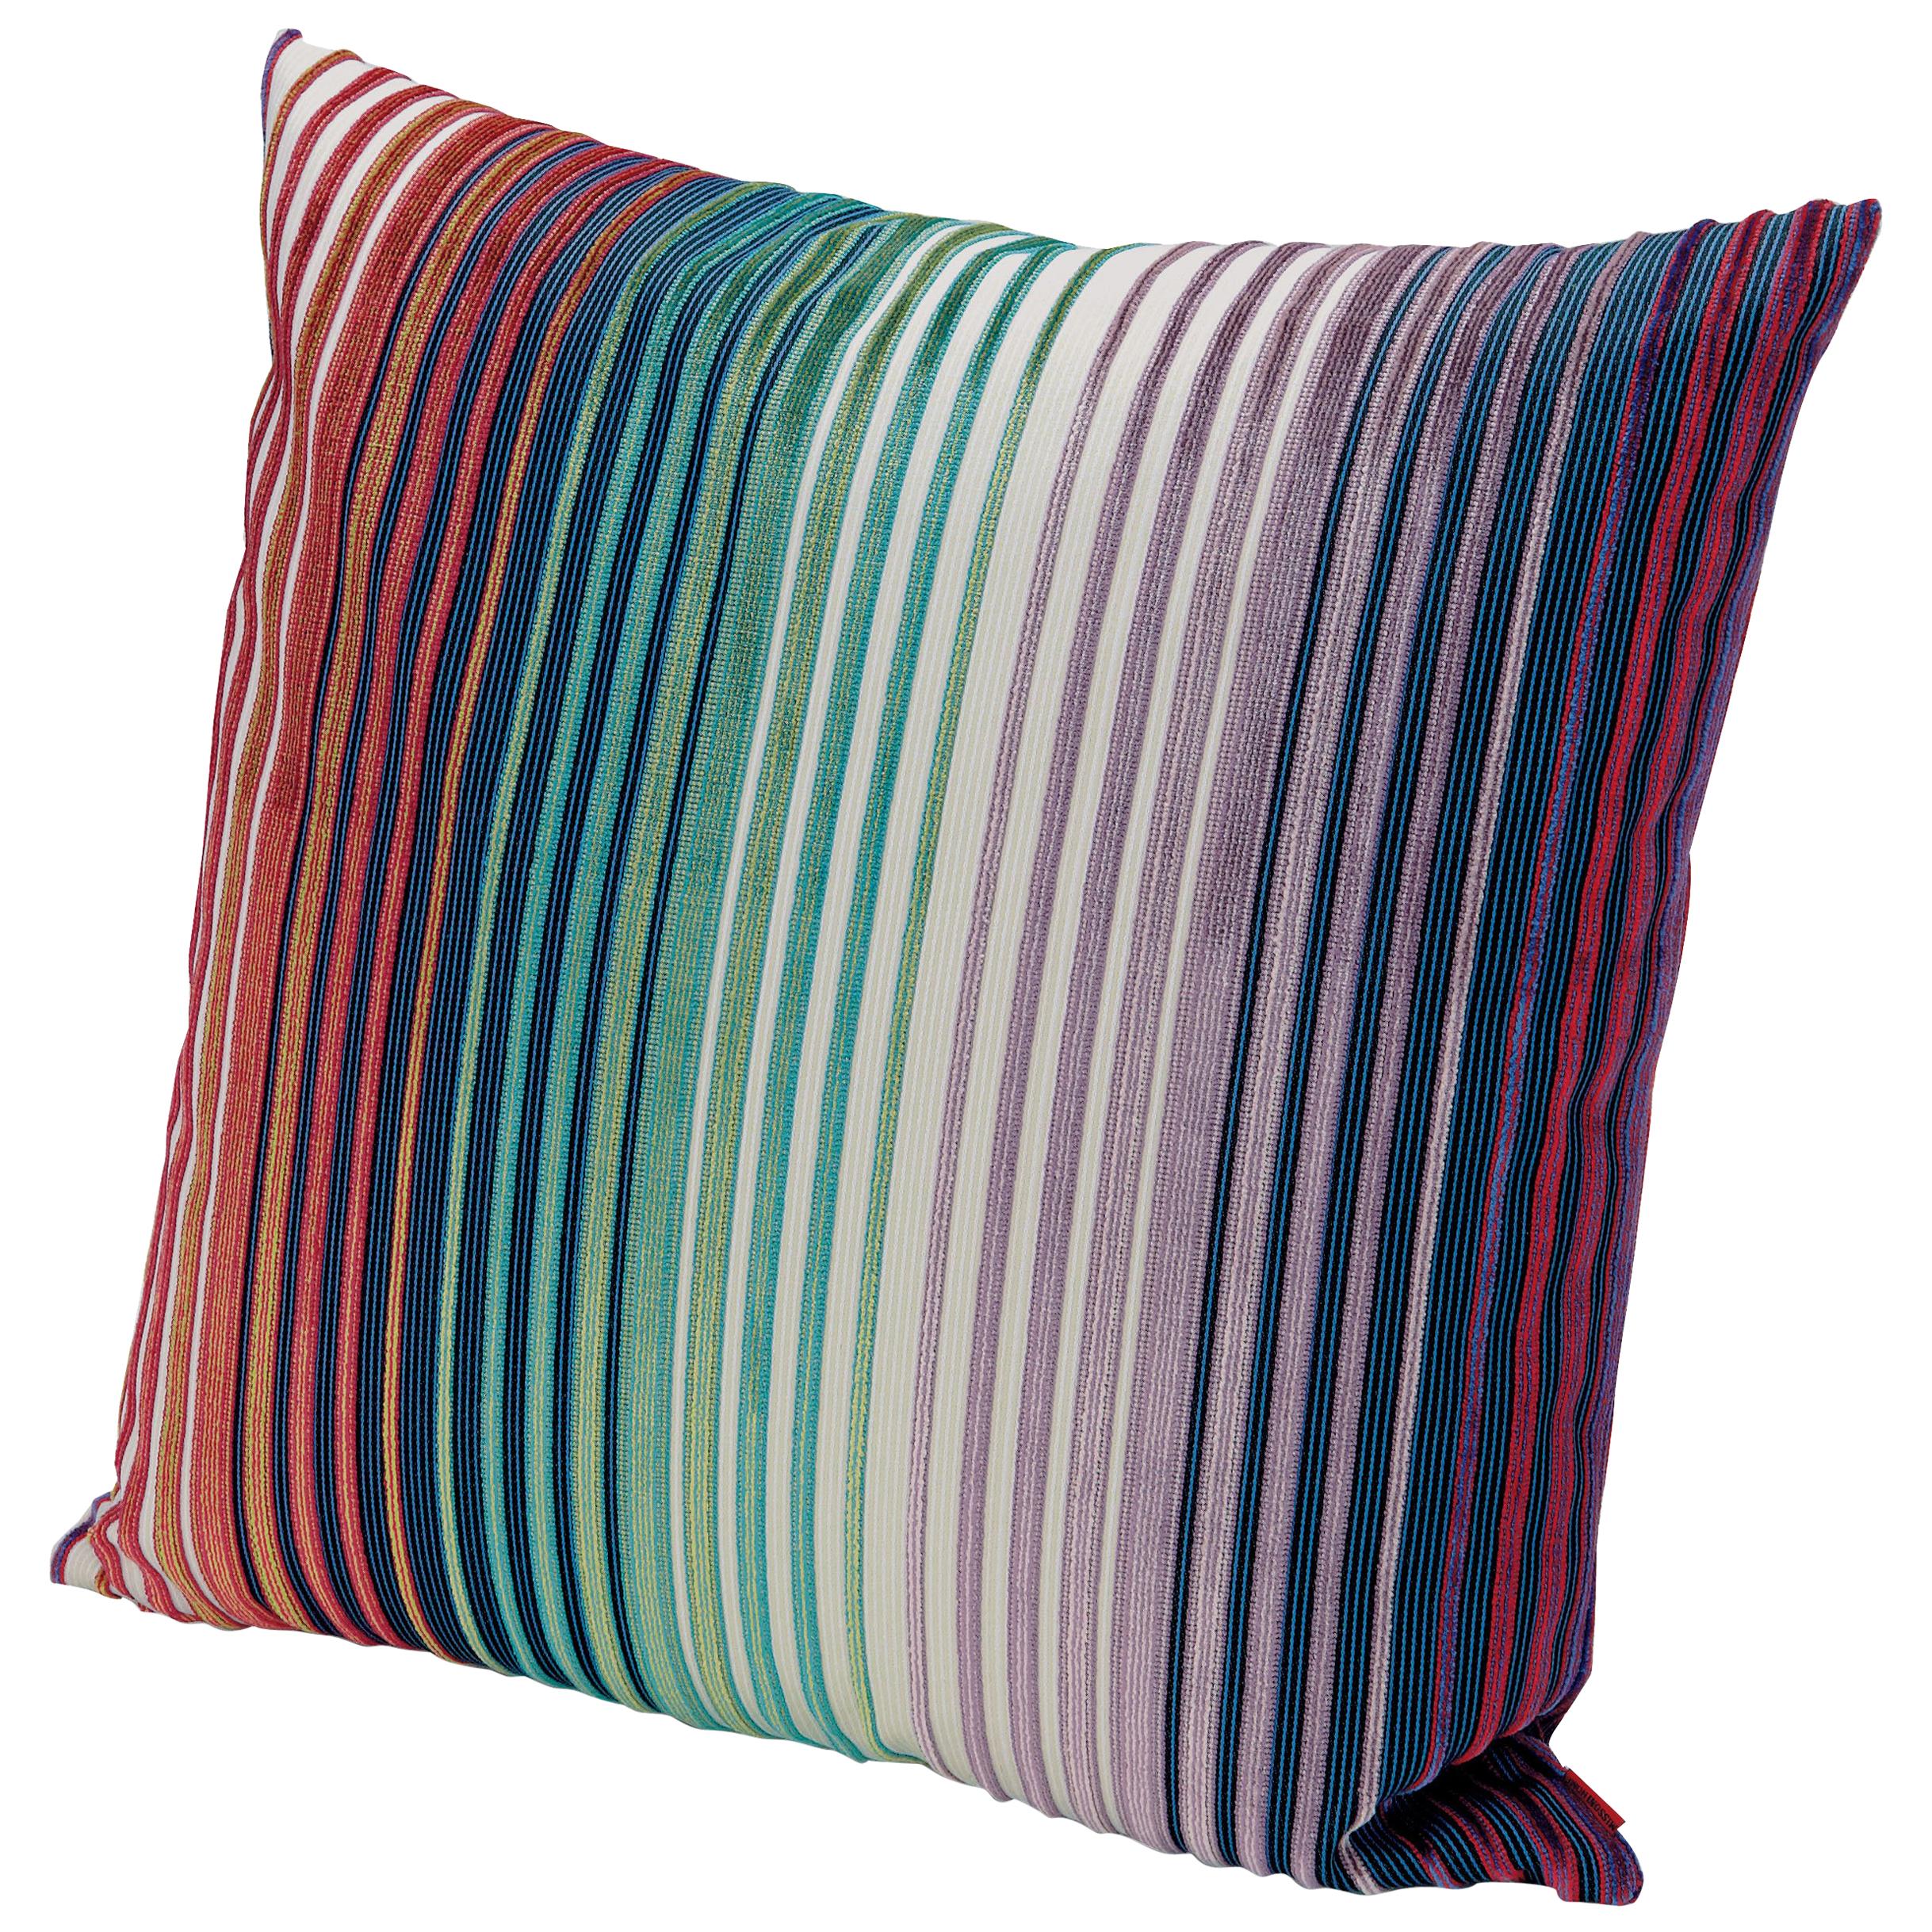 Missoni Home Tunisi Cushion in Multi-Color Striped Print For Sale